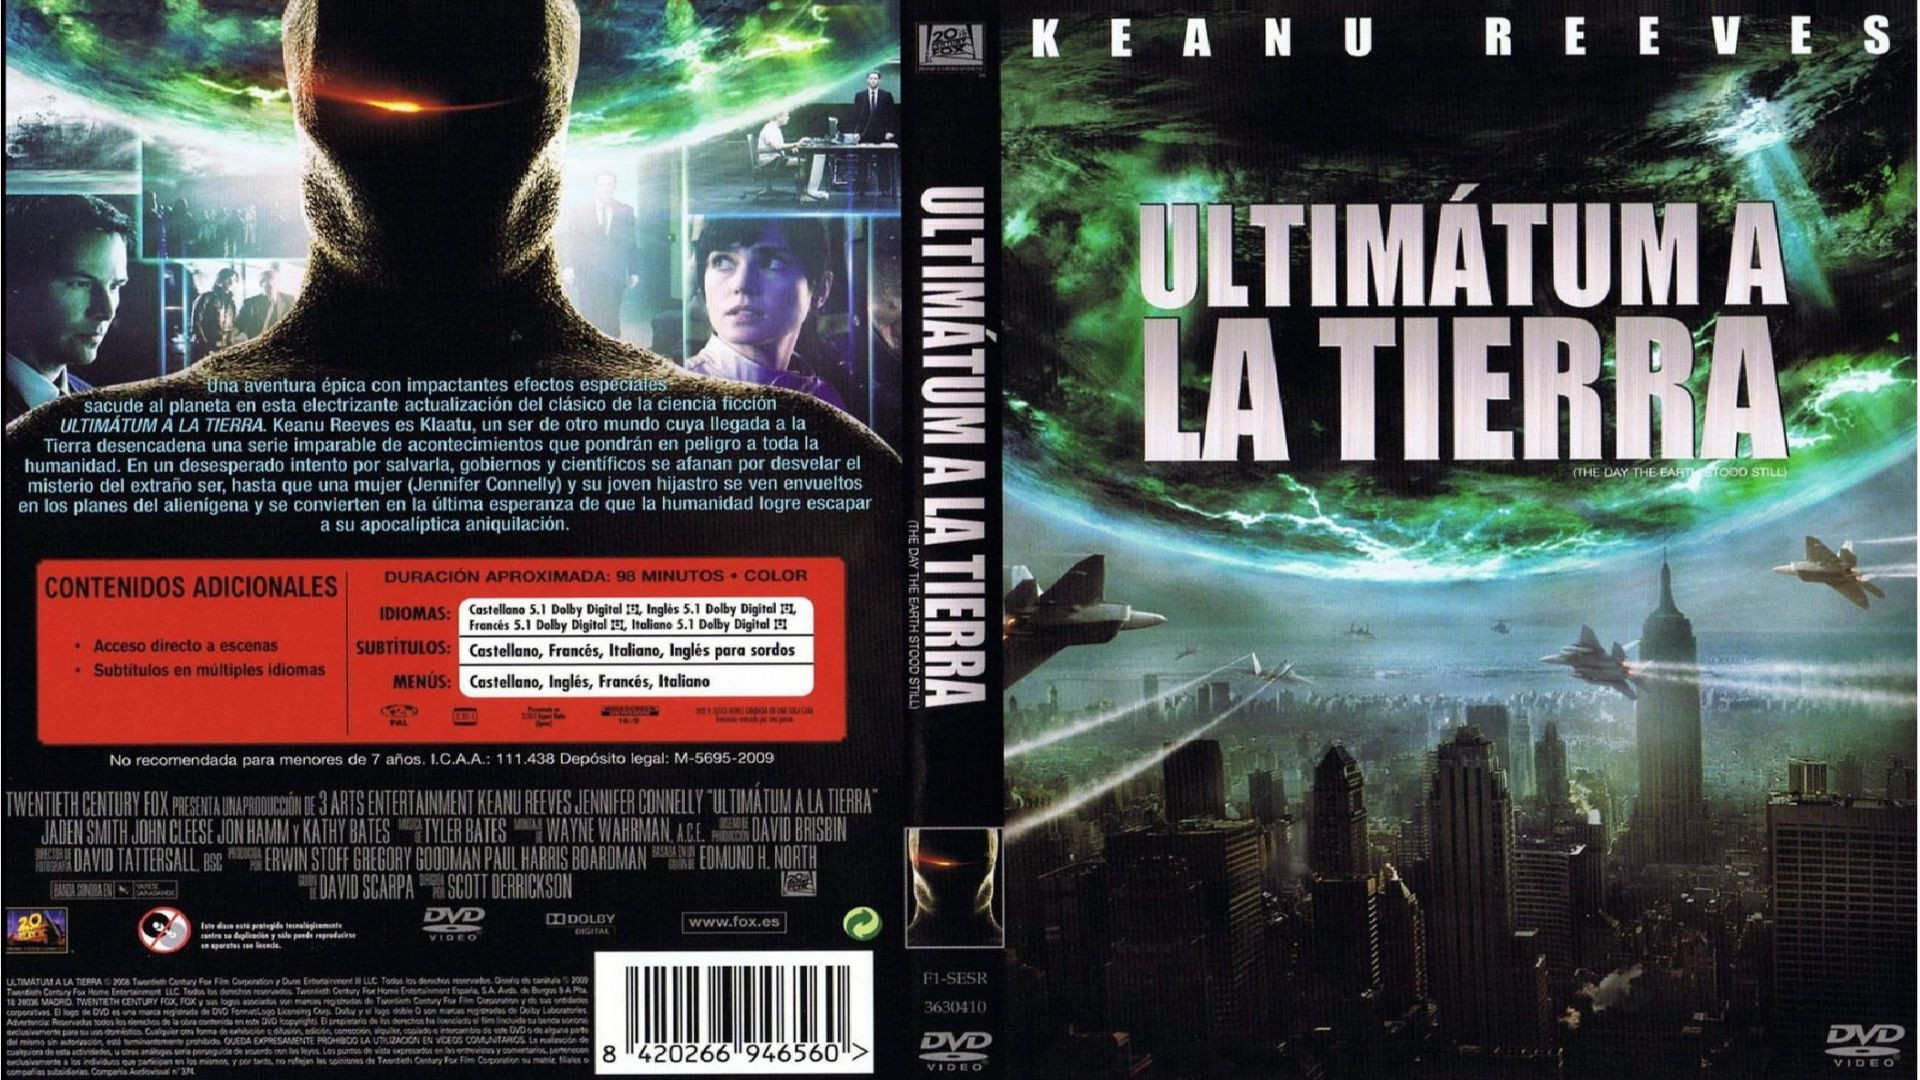 Ultimatum a la Tierra (2008) cas.